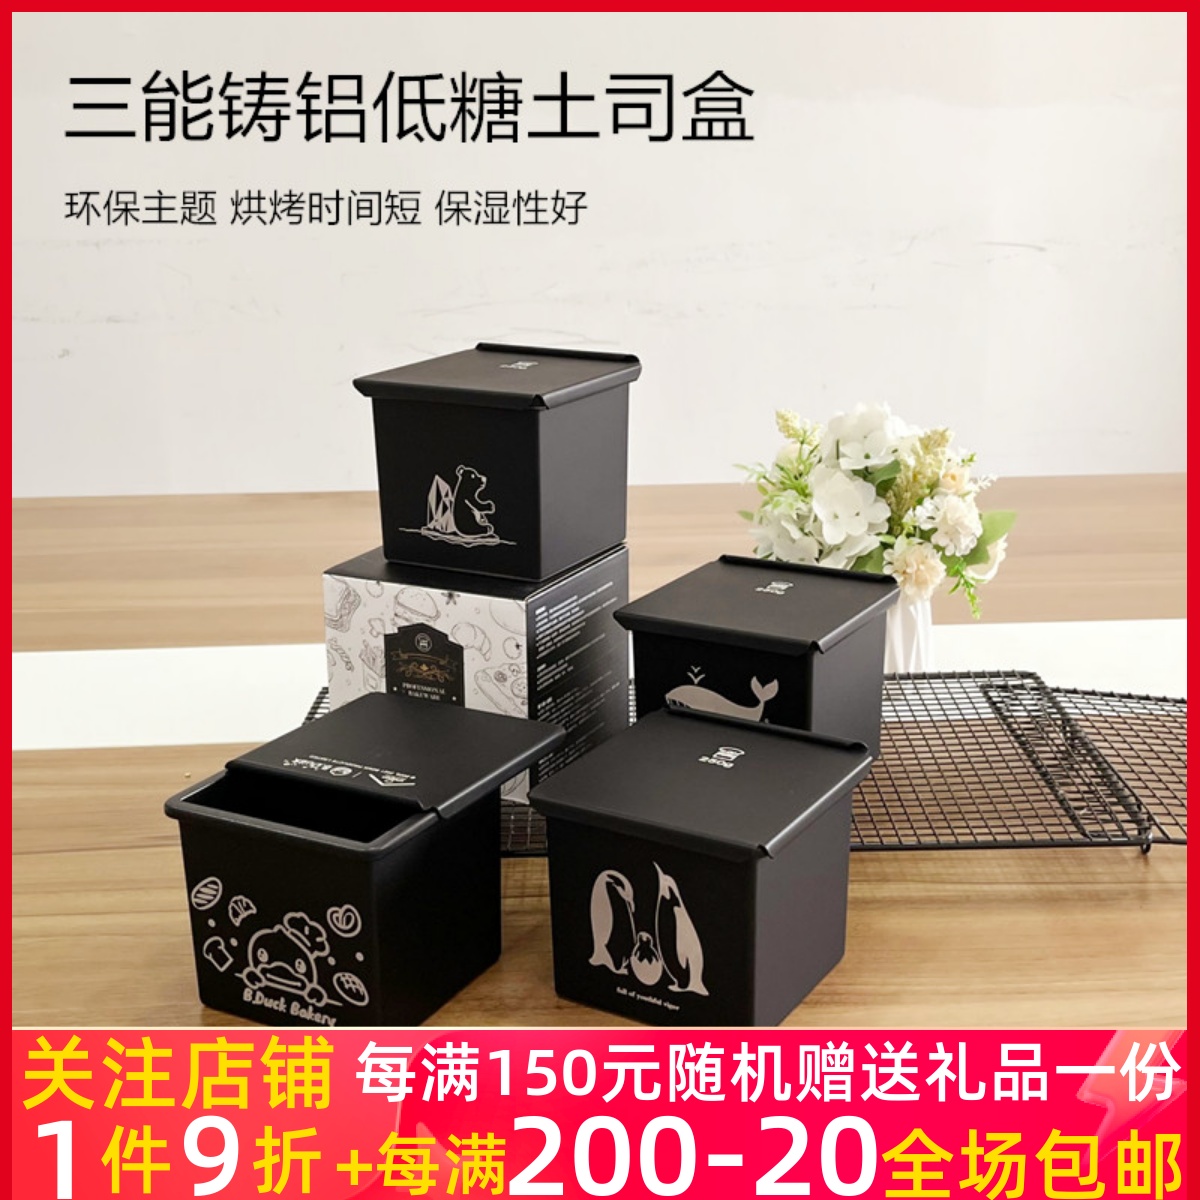 三能正方形低糖铸铝土司盒带盖黑色不粘吐司SN2197烘焙模具水立方